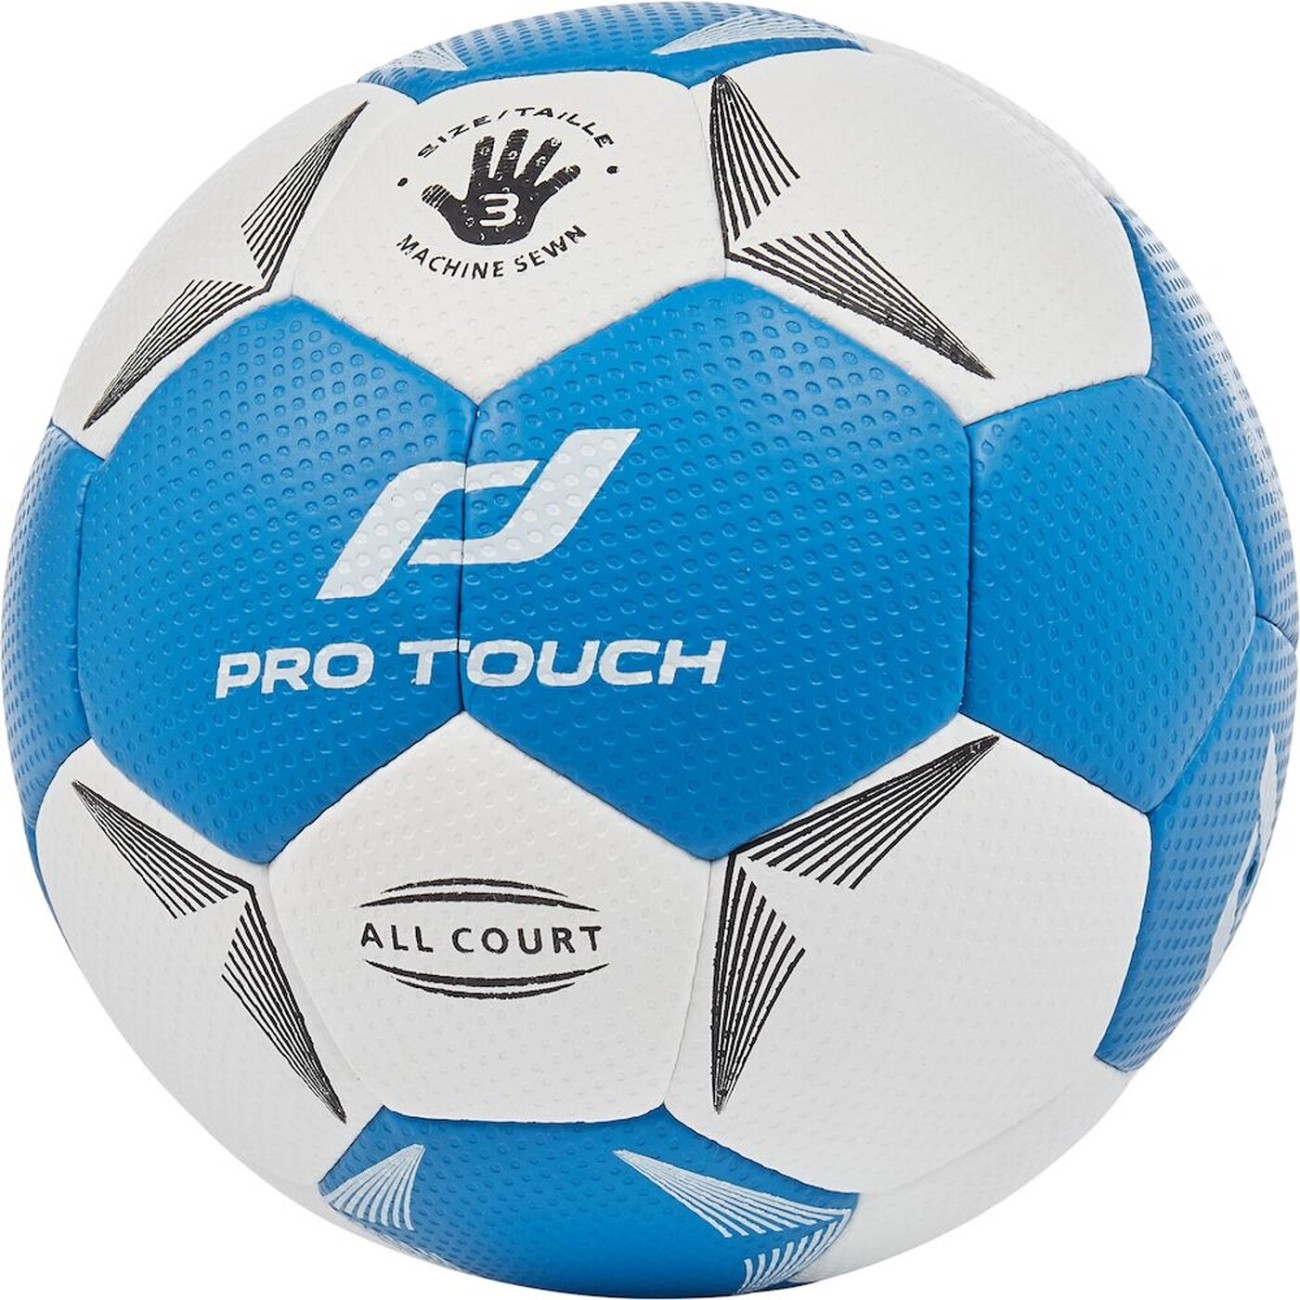 PRO TOUCH Handball All Court online kaufen